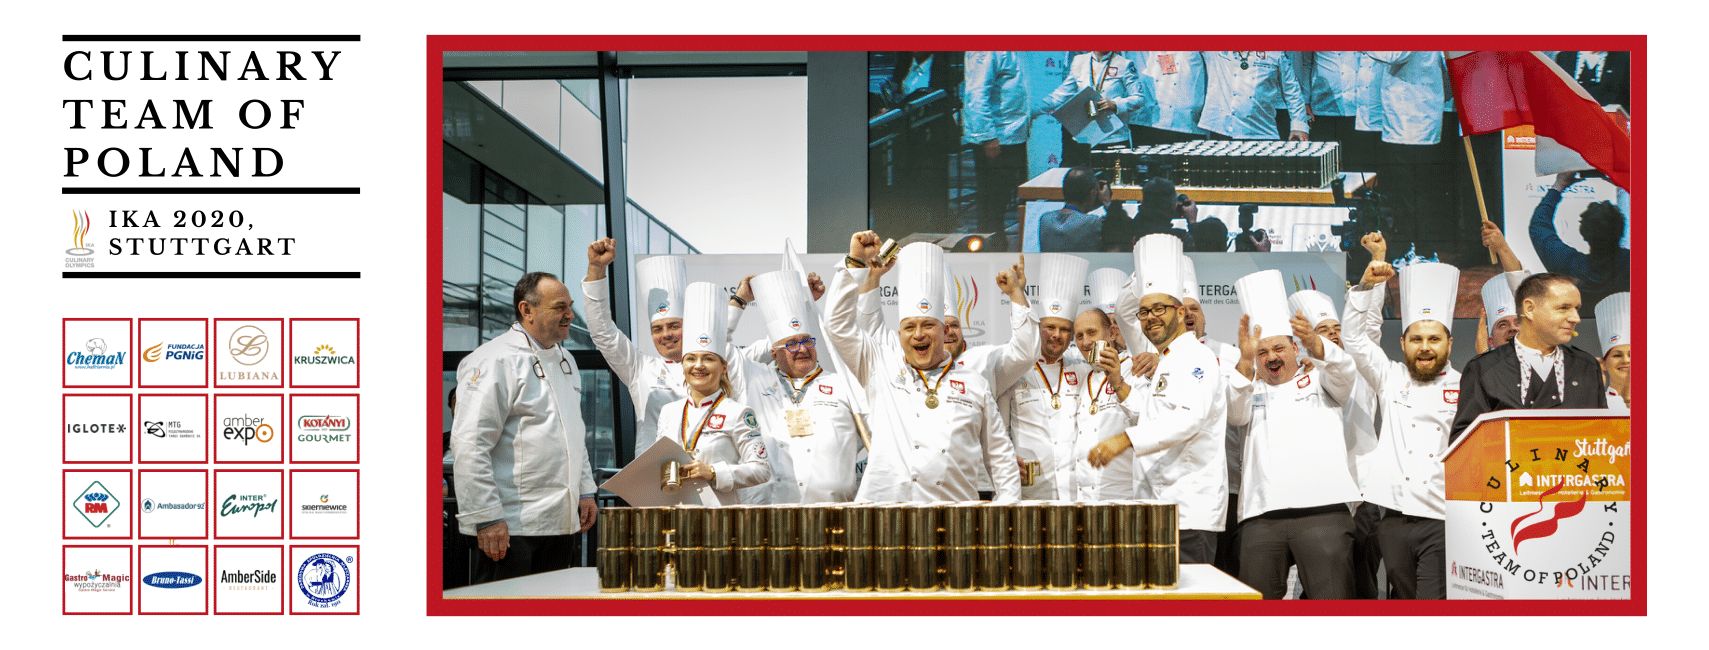 Brązowy medal dla Culinary Team of Poland na IKA 2020 w Stuttgarcie